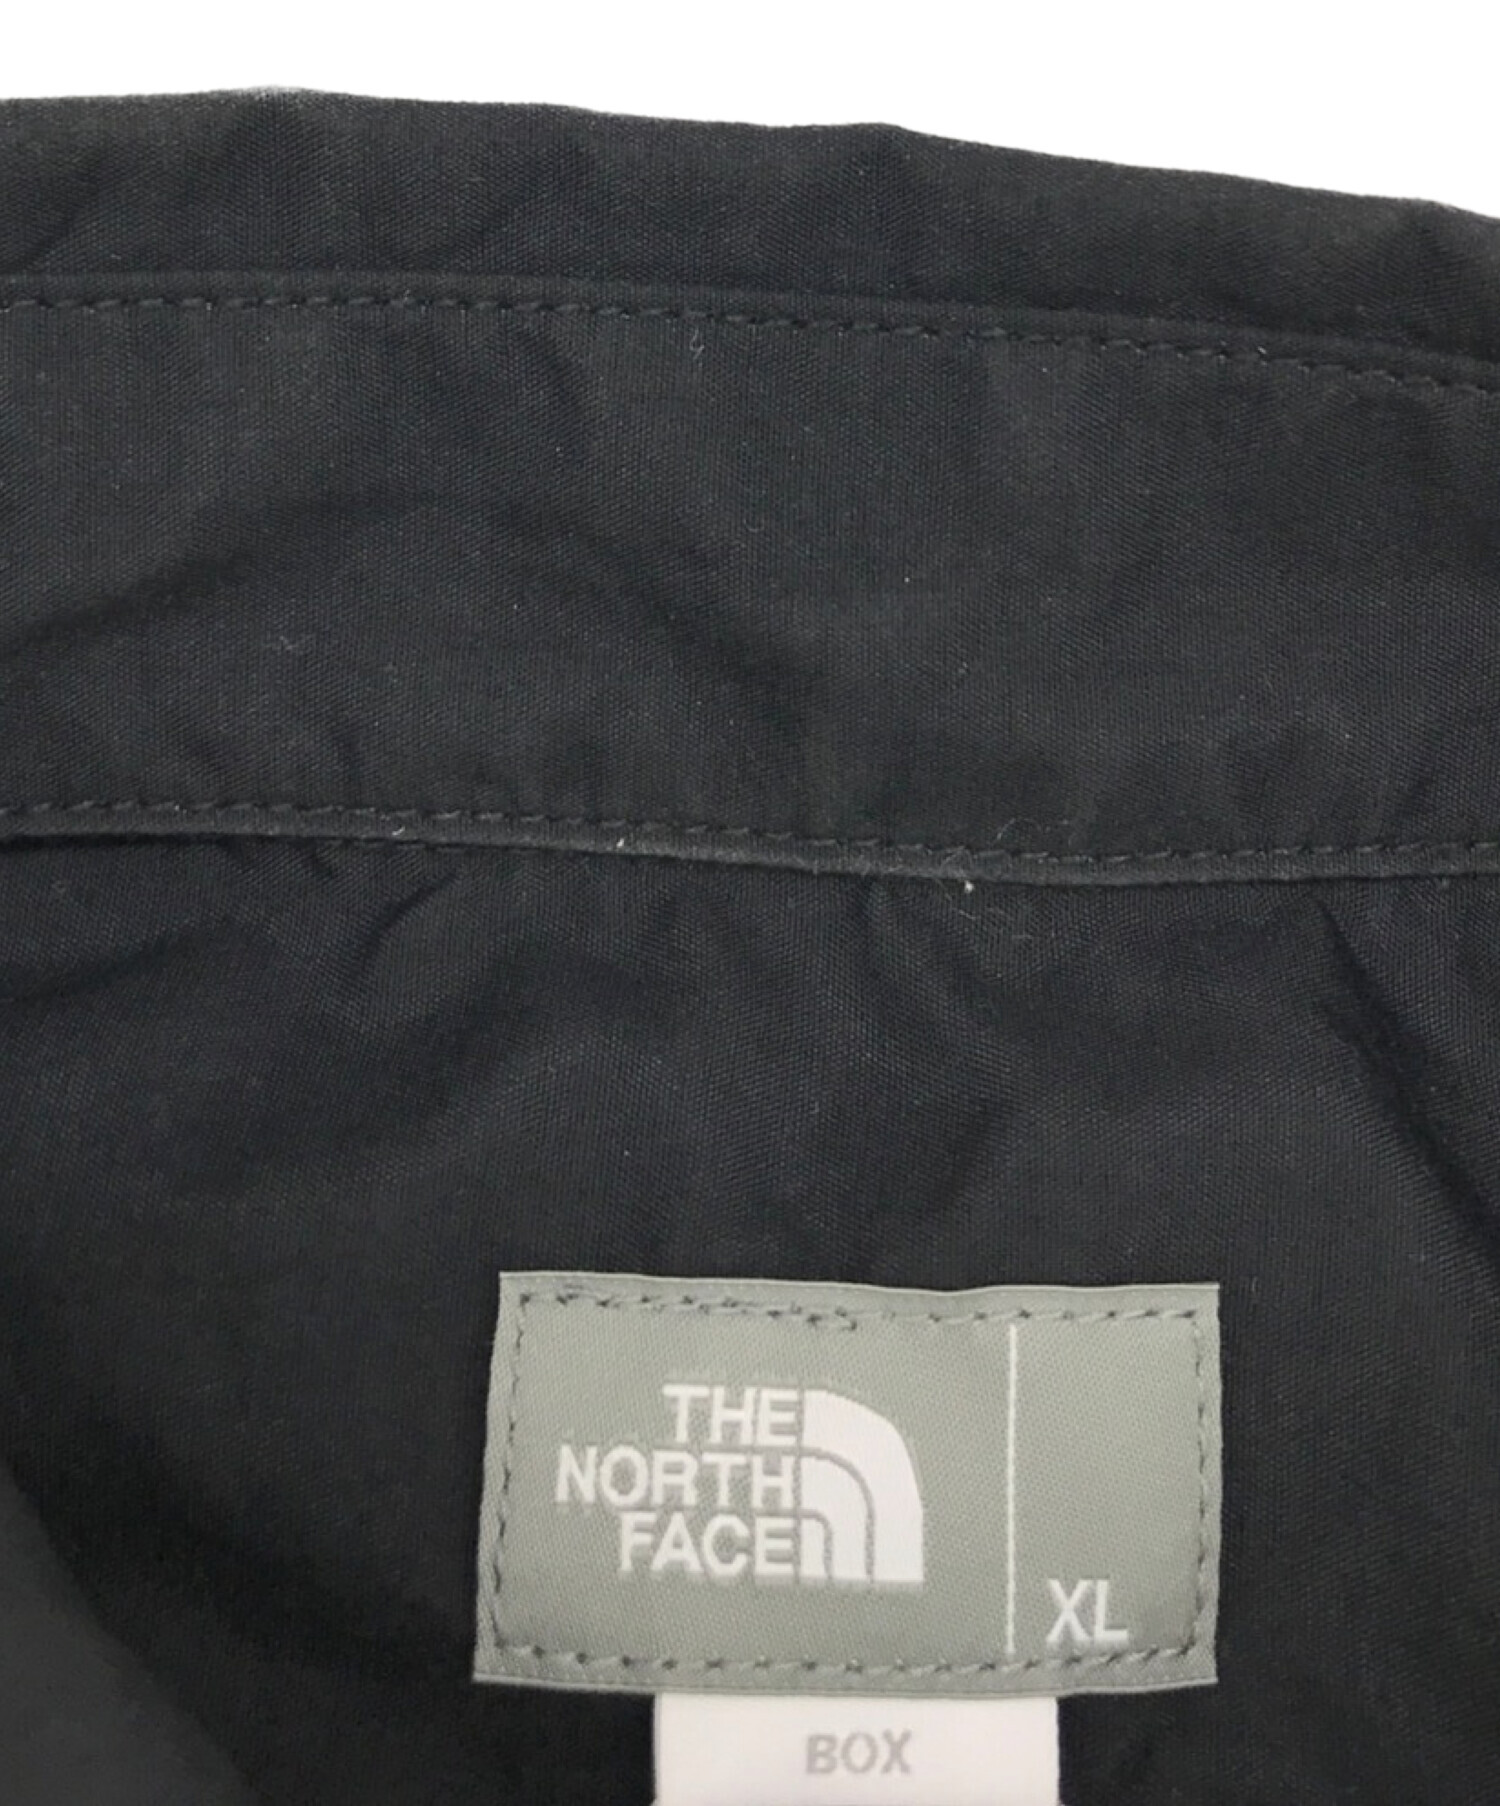 THE NORTH FACE (ザ ノース フェイス) S/S Nuptse Shirt / ショートスリーブ ヌプシシャツ オレンジ×ブラック  サイズ:XL